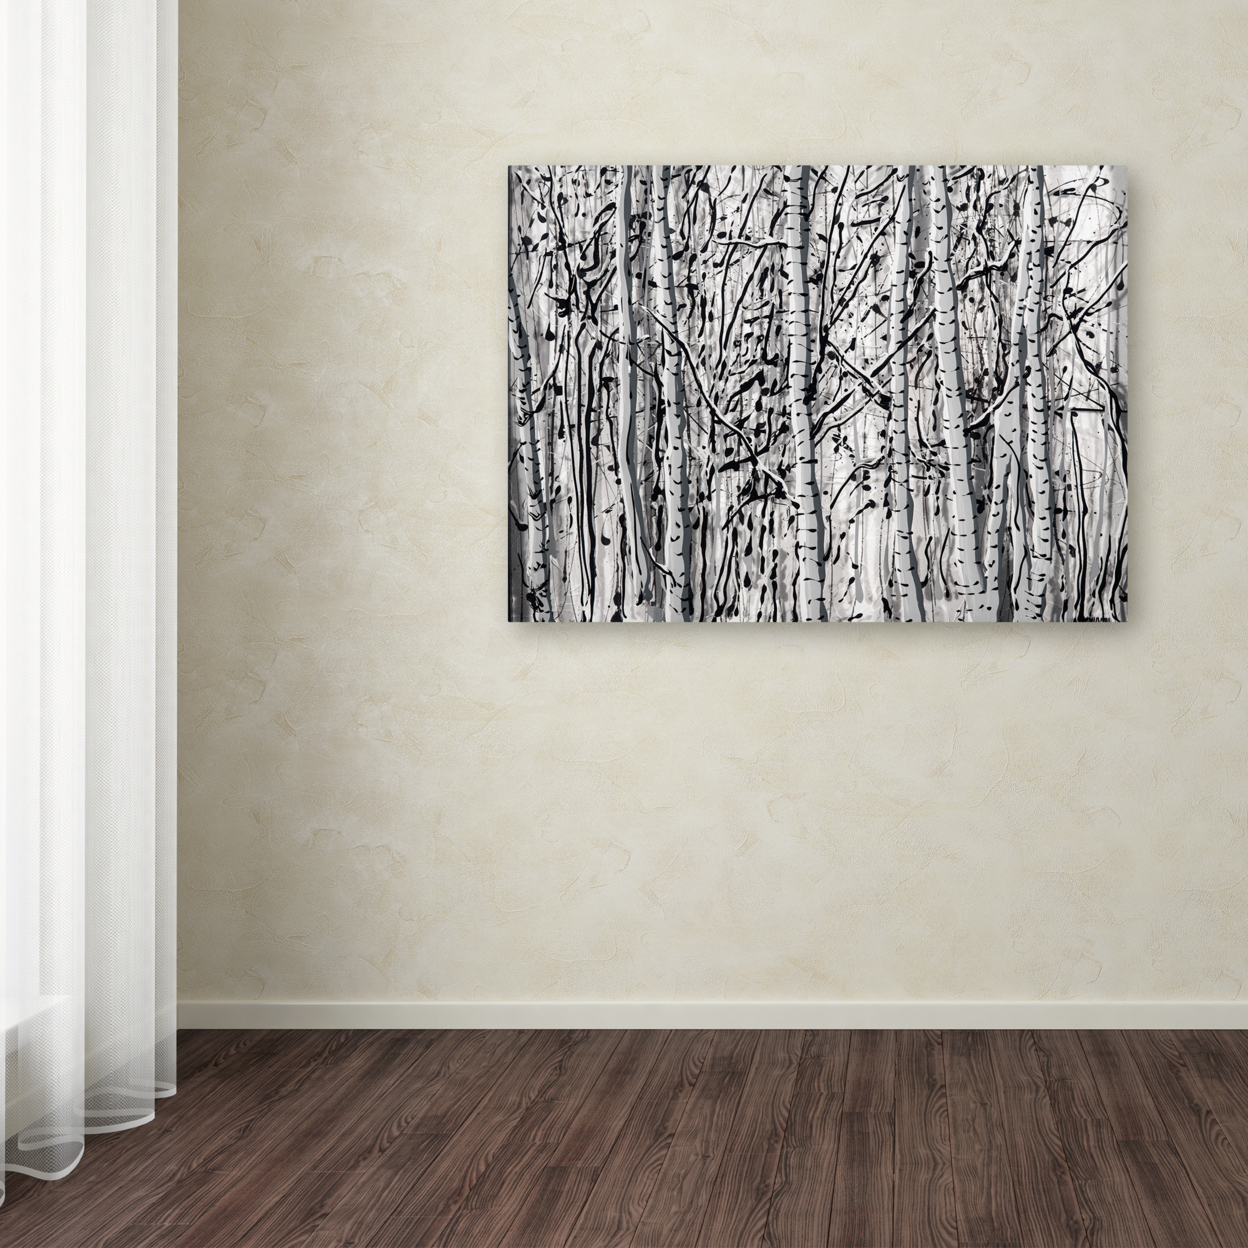 Roderick Stevens 'Winter Aspens' Canvas Wall Art 35 X 47 Inches